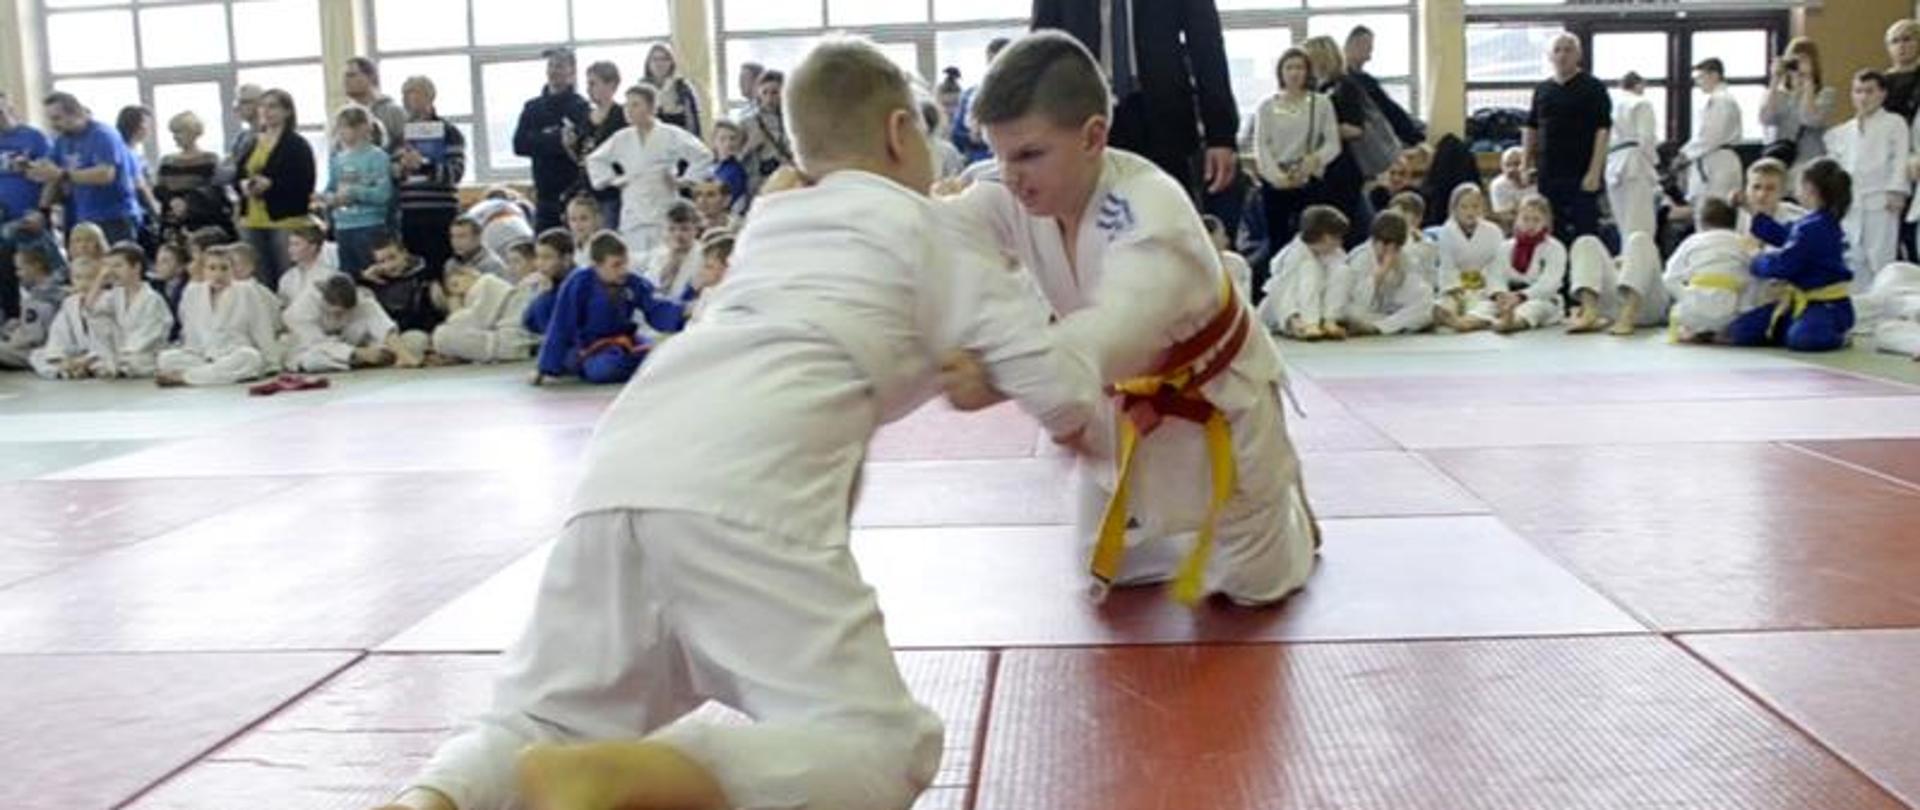 Już po raz trzynasty judocy zmierzyli się w Kaczorach